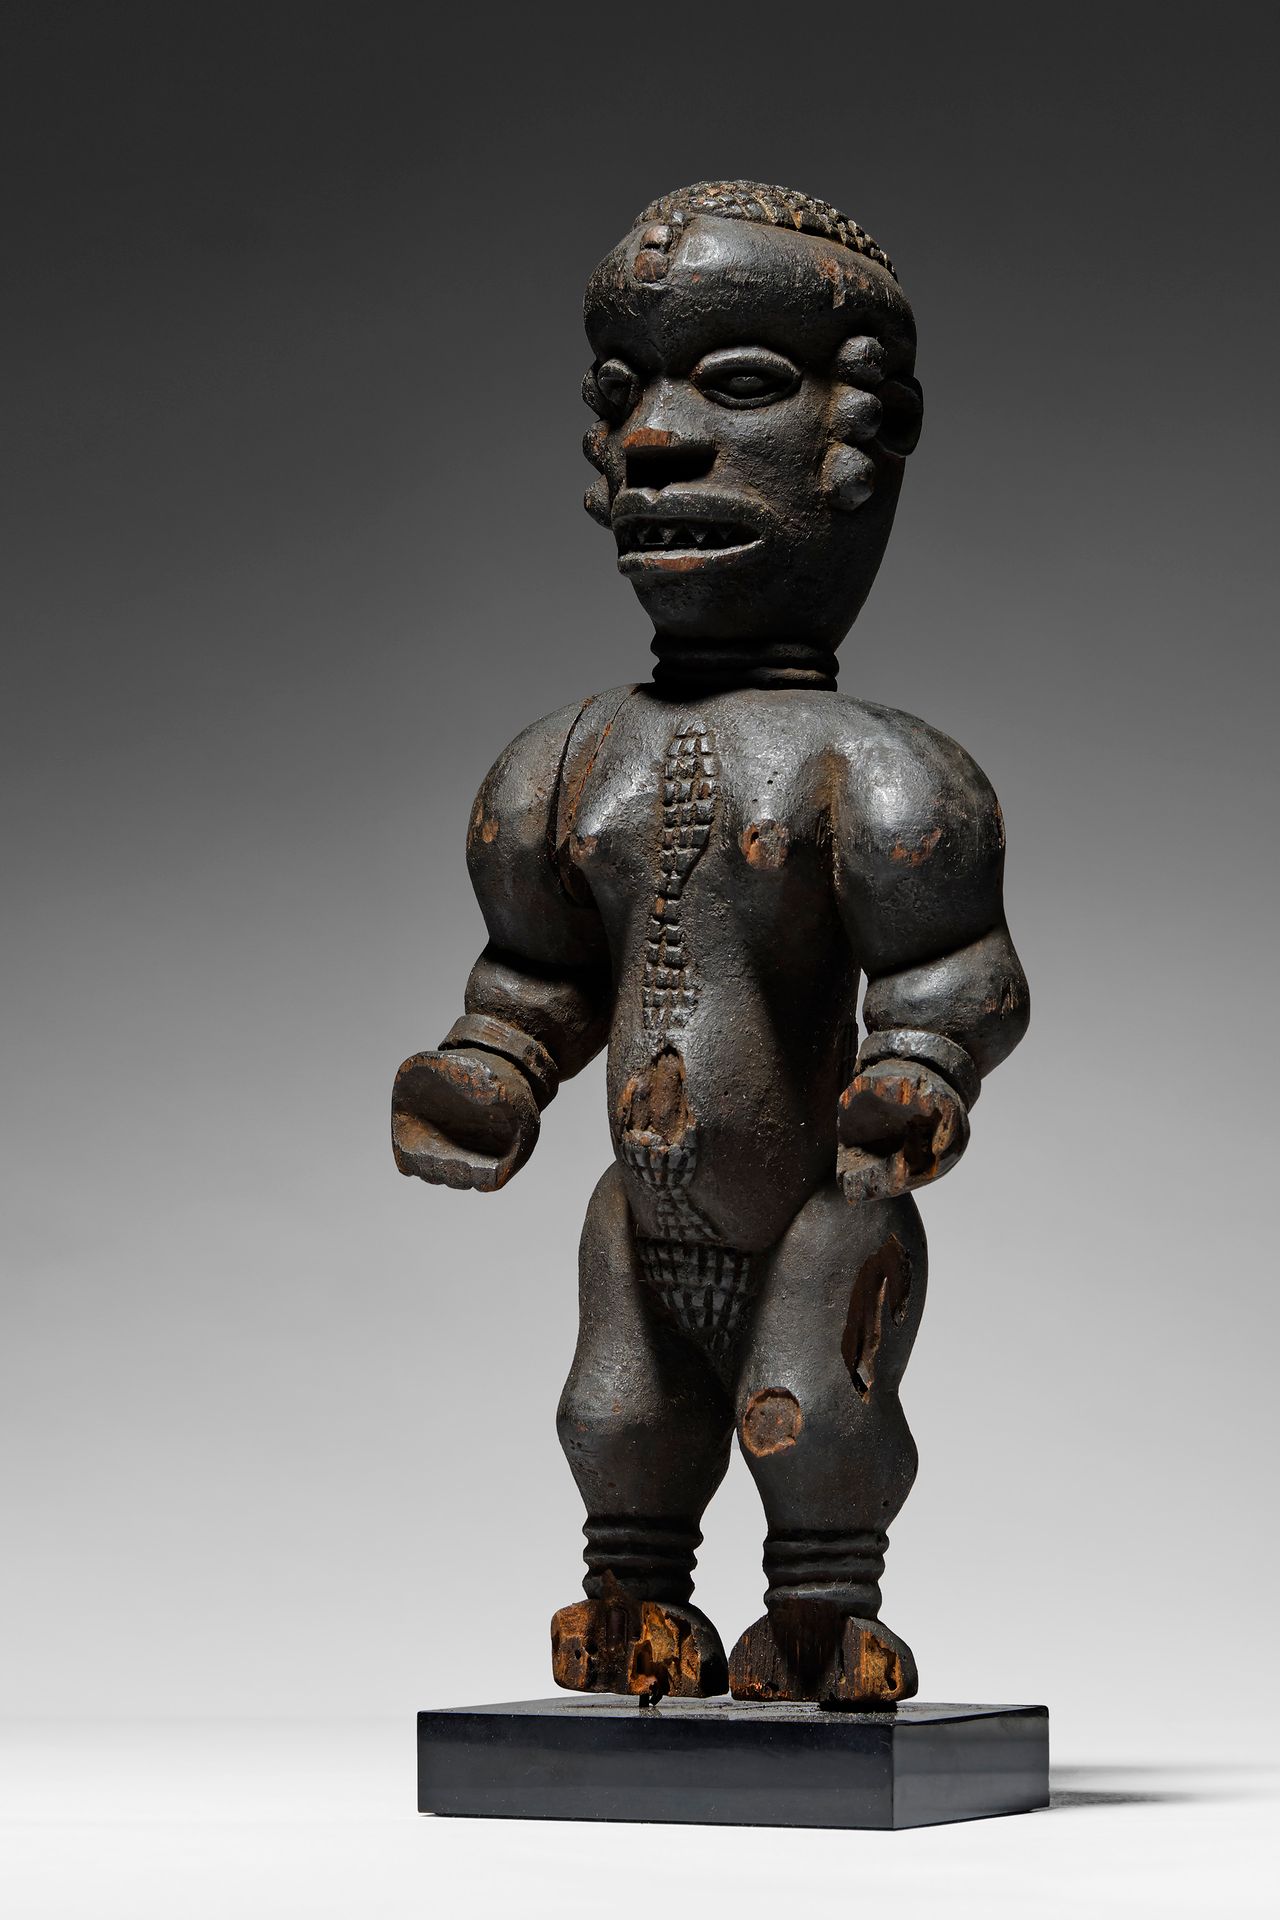 Eket Figure Nigeria

Madera y pigmento - 30 cm

Procedencia:

Importante colecci&hellip;